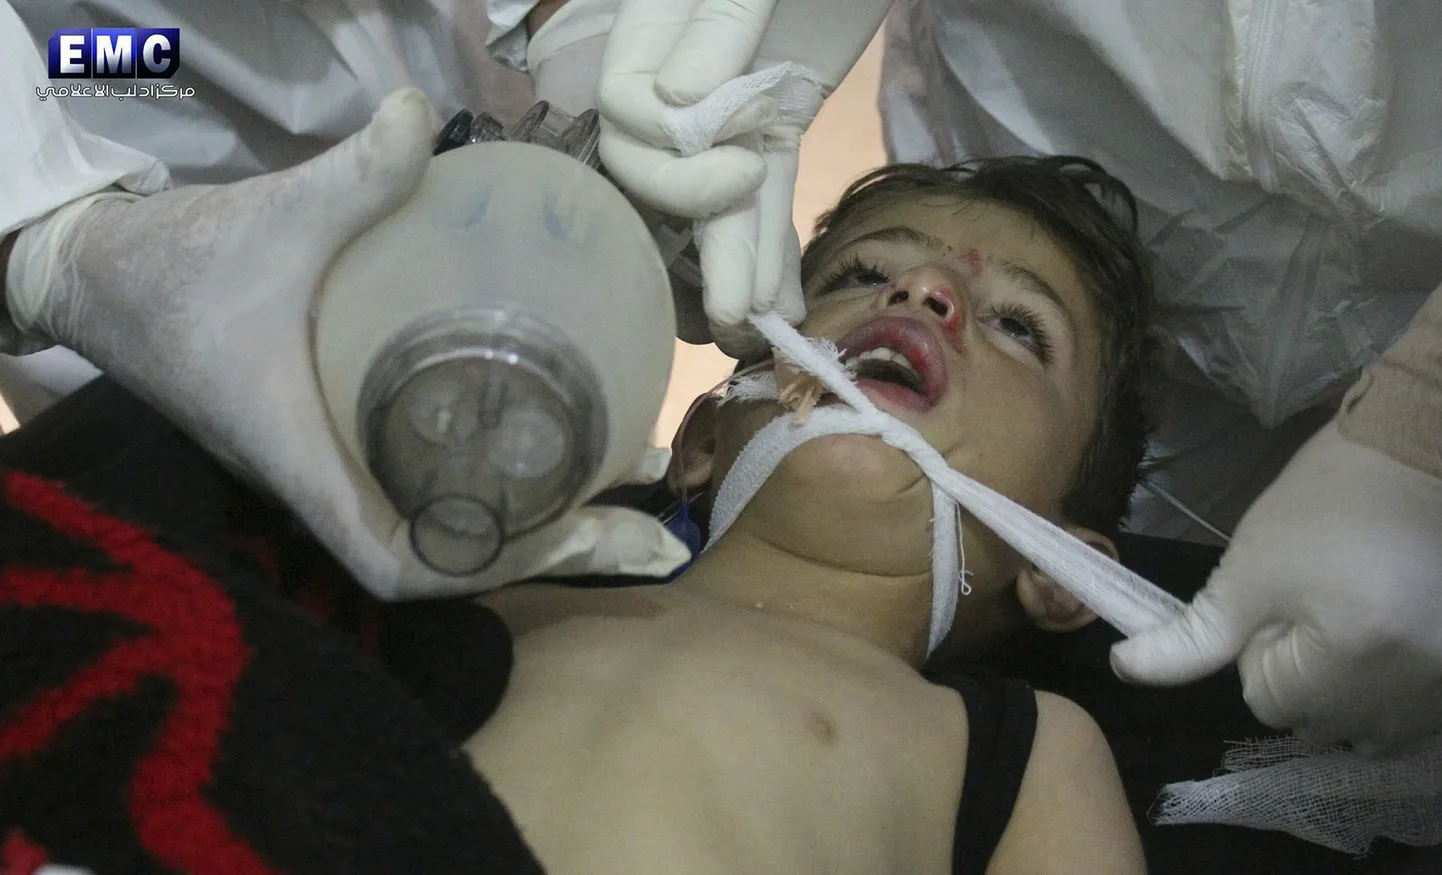 Süüria arstid üleeilses rünnakus viga saanud poissi ravimas.